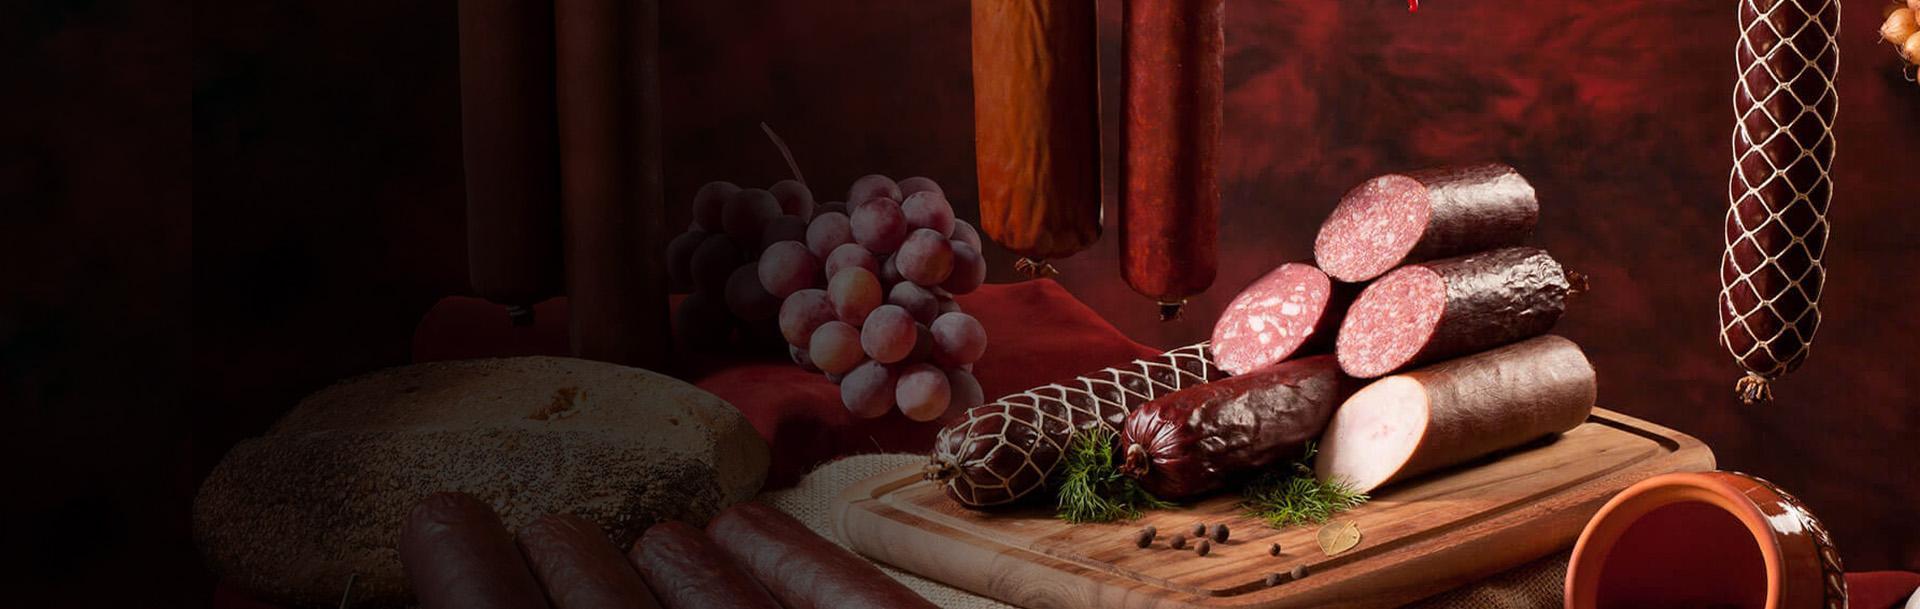 wiszące kiełbasy kiełbasy leżące na desce chleb i winogrona